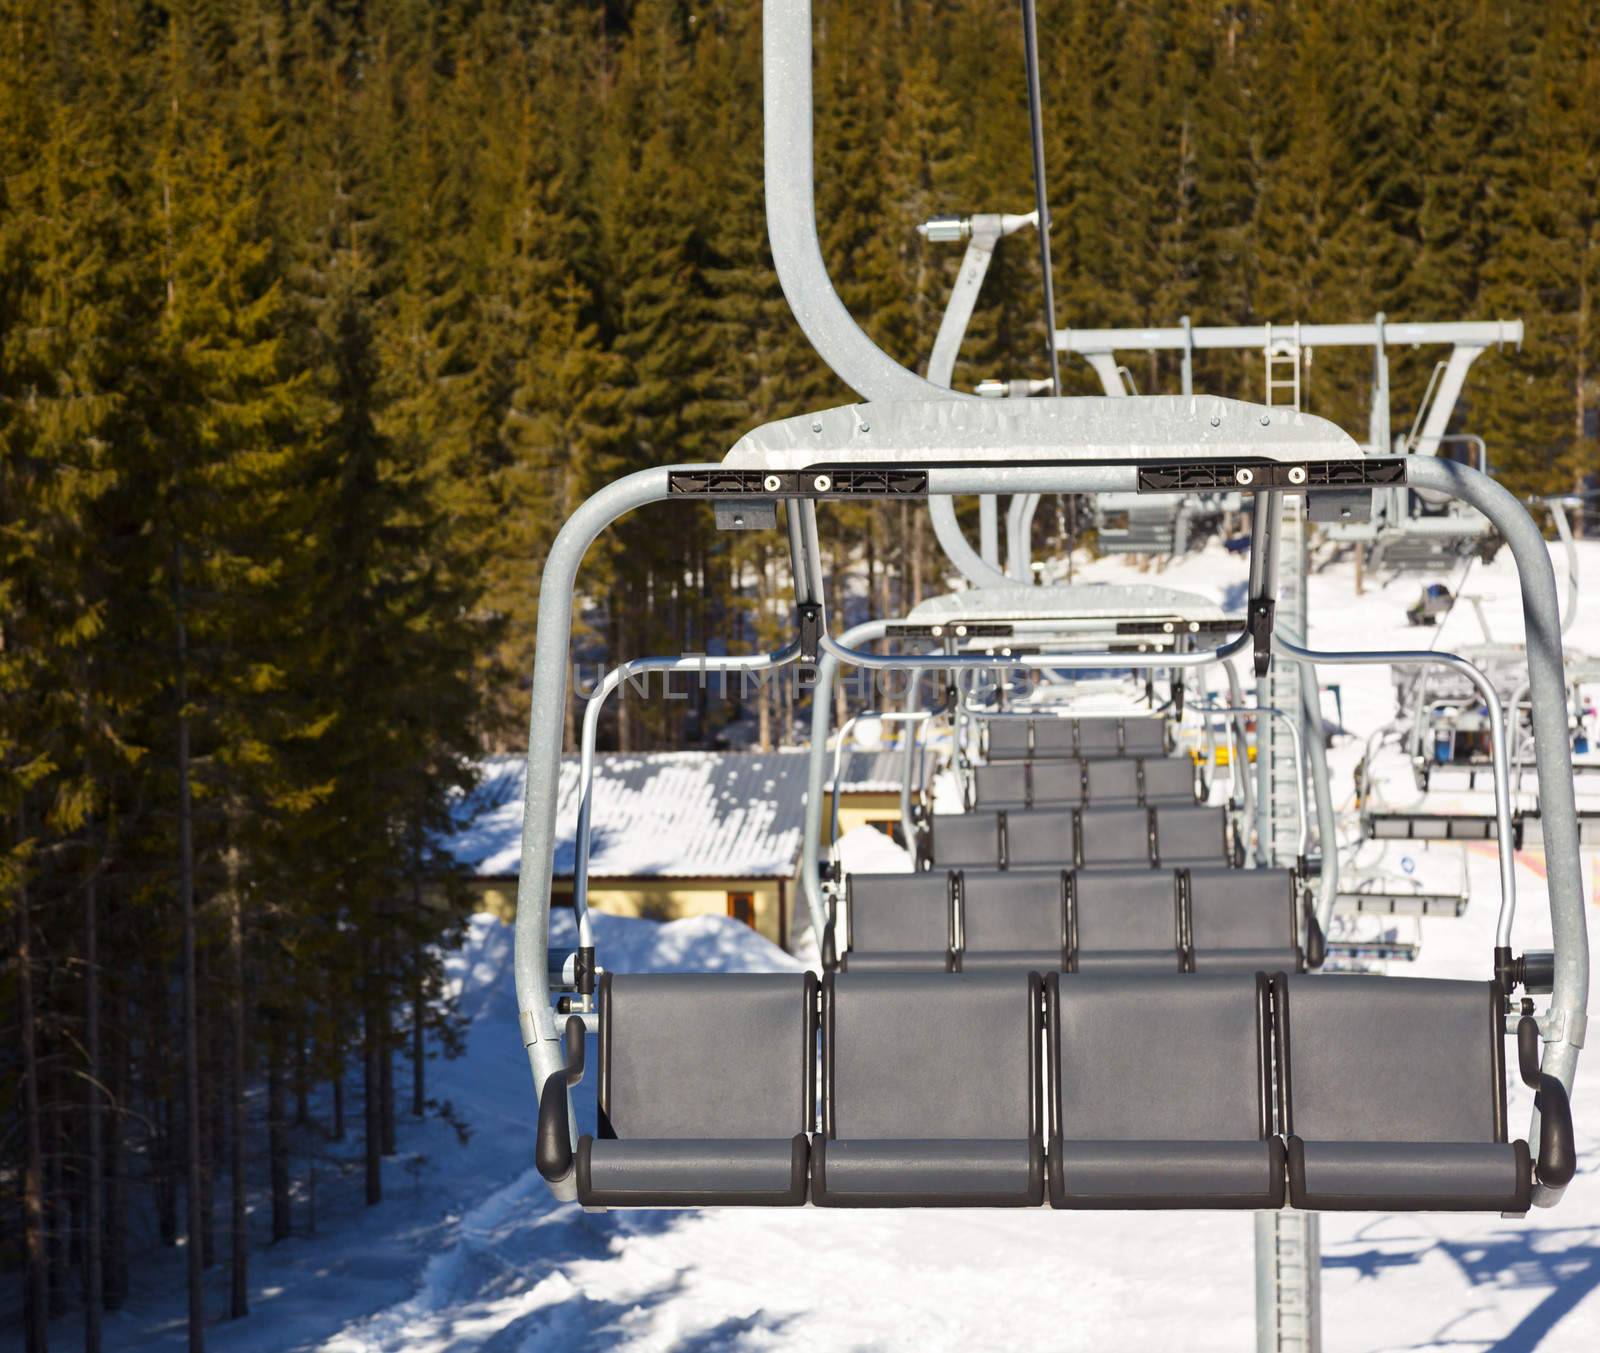 Ski lift by naumoid